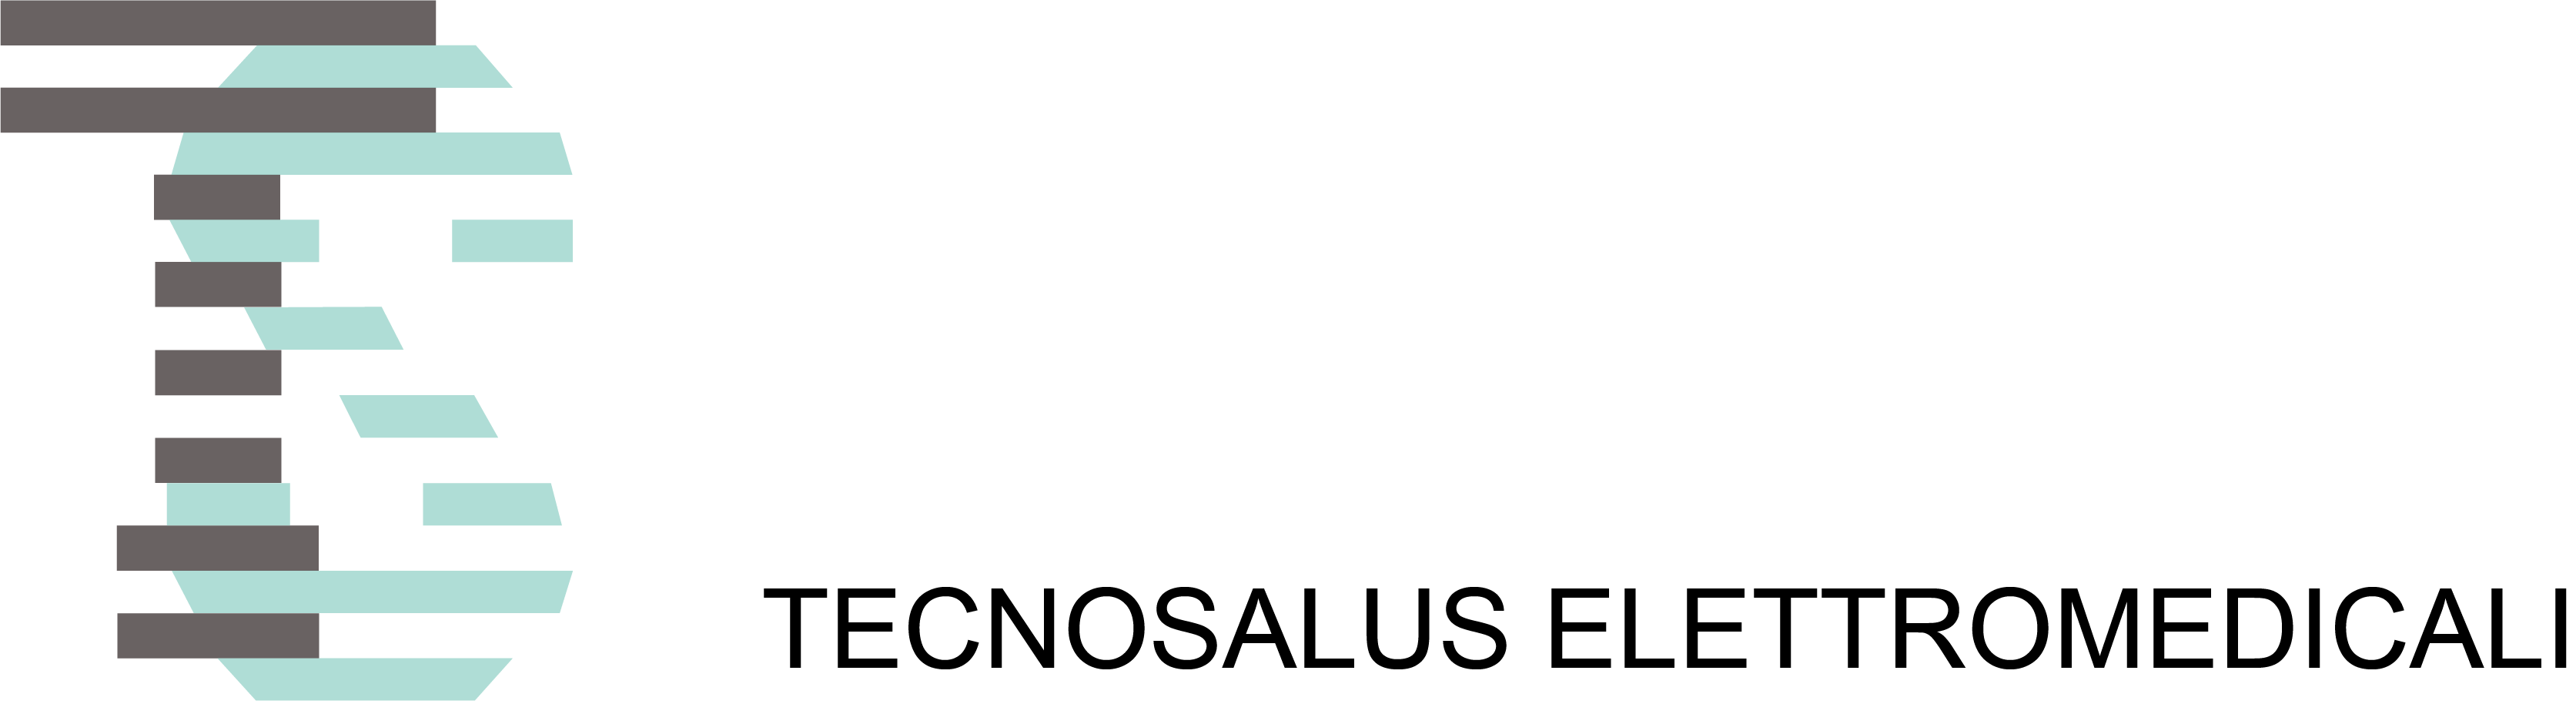 Tecnosalus